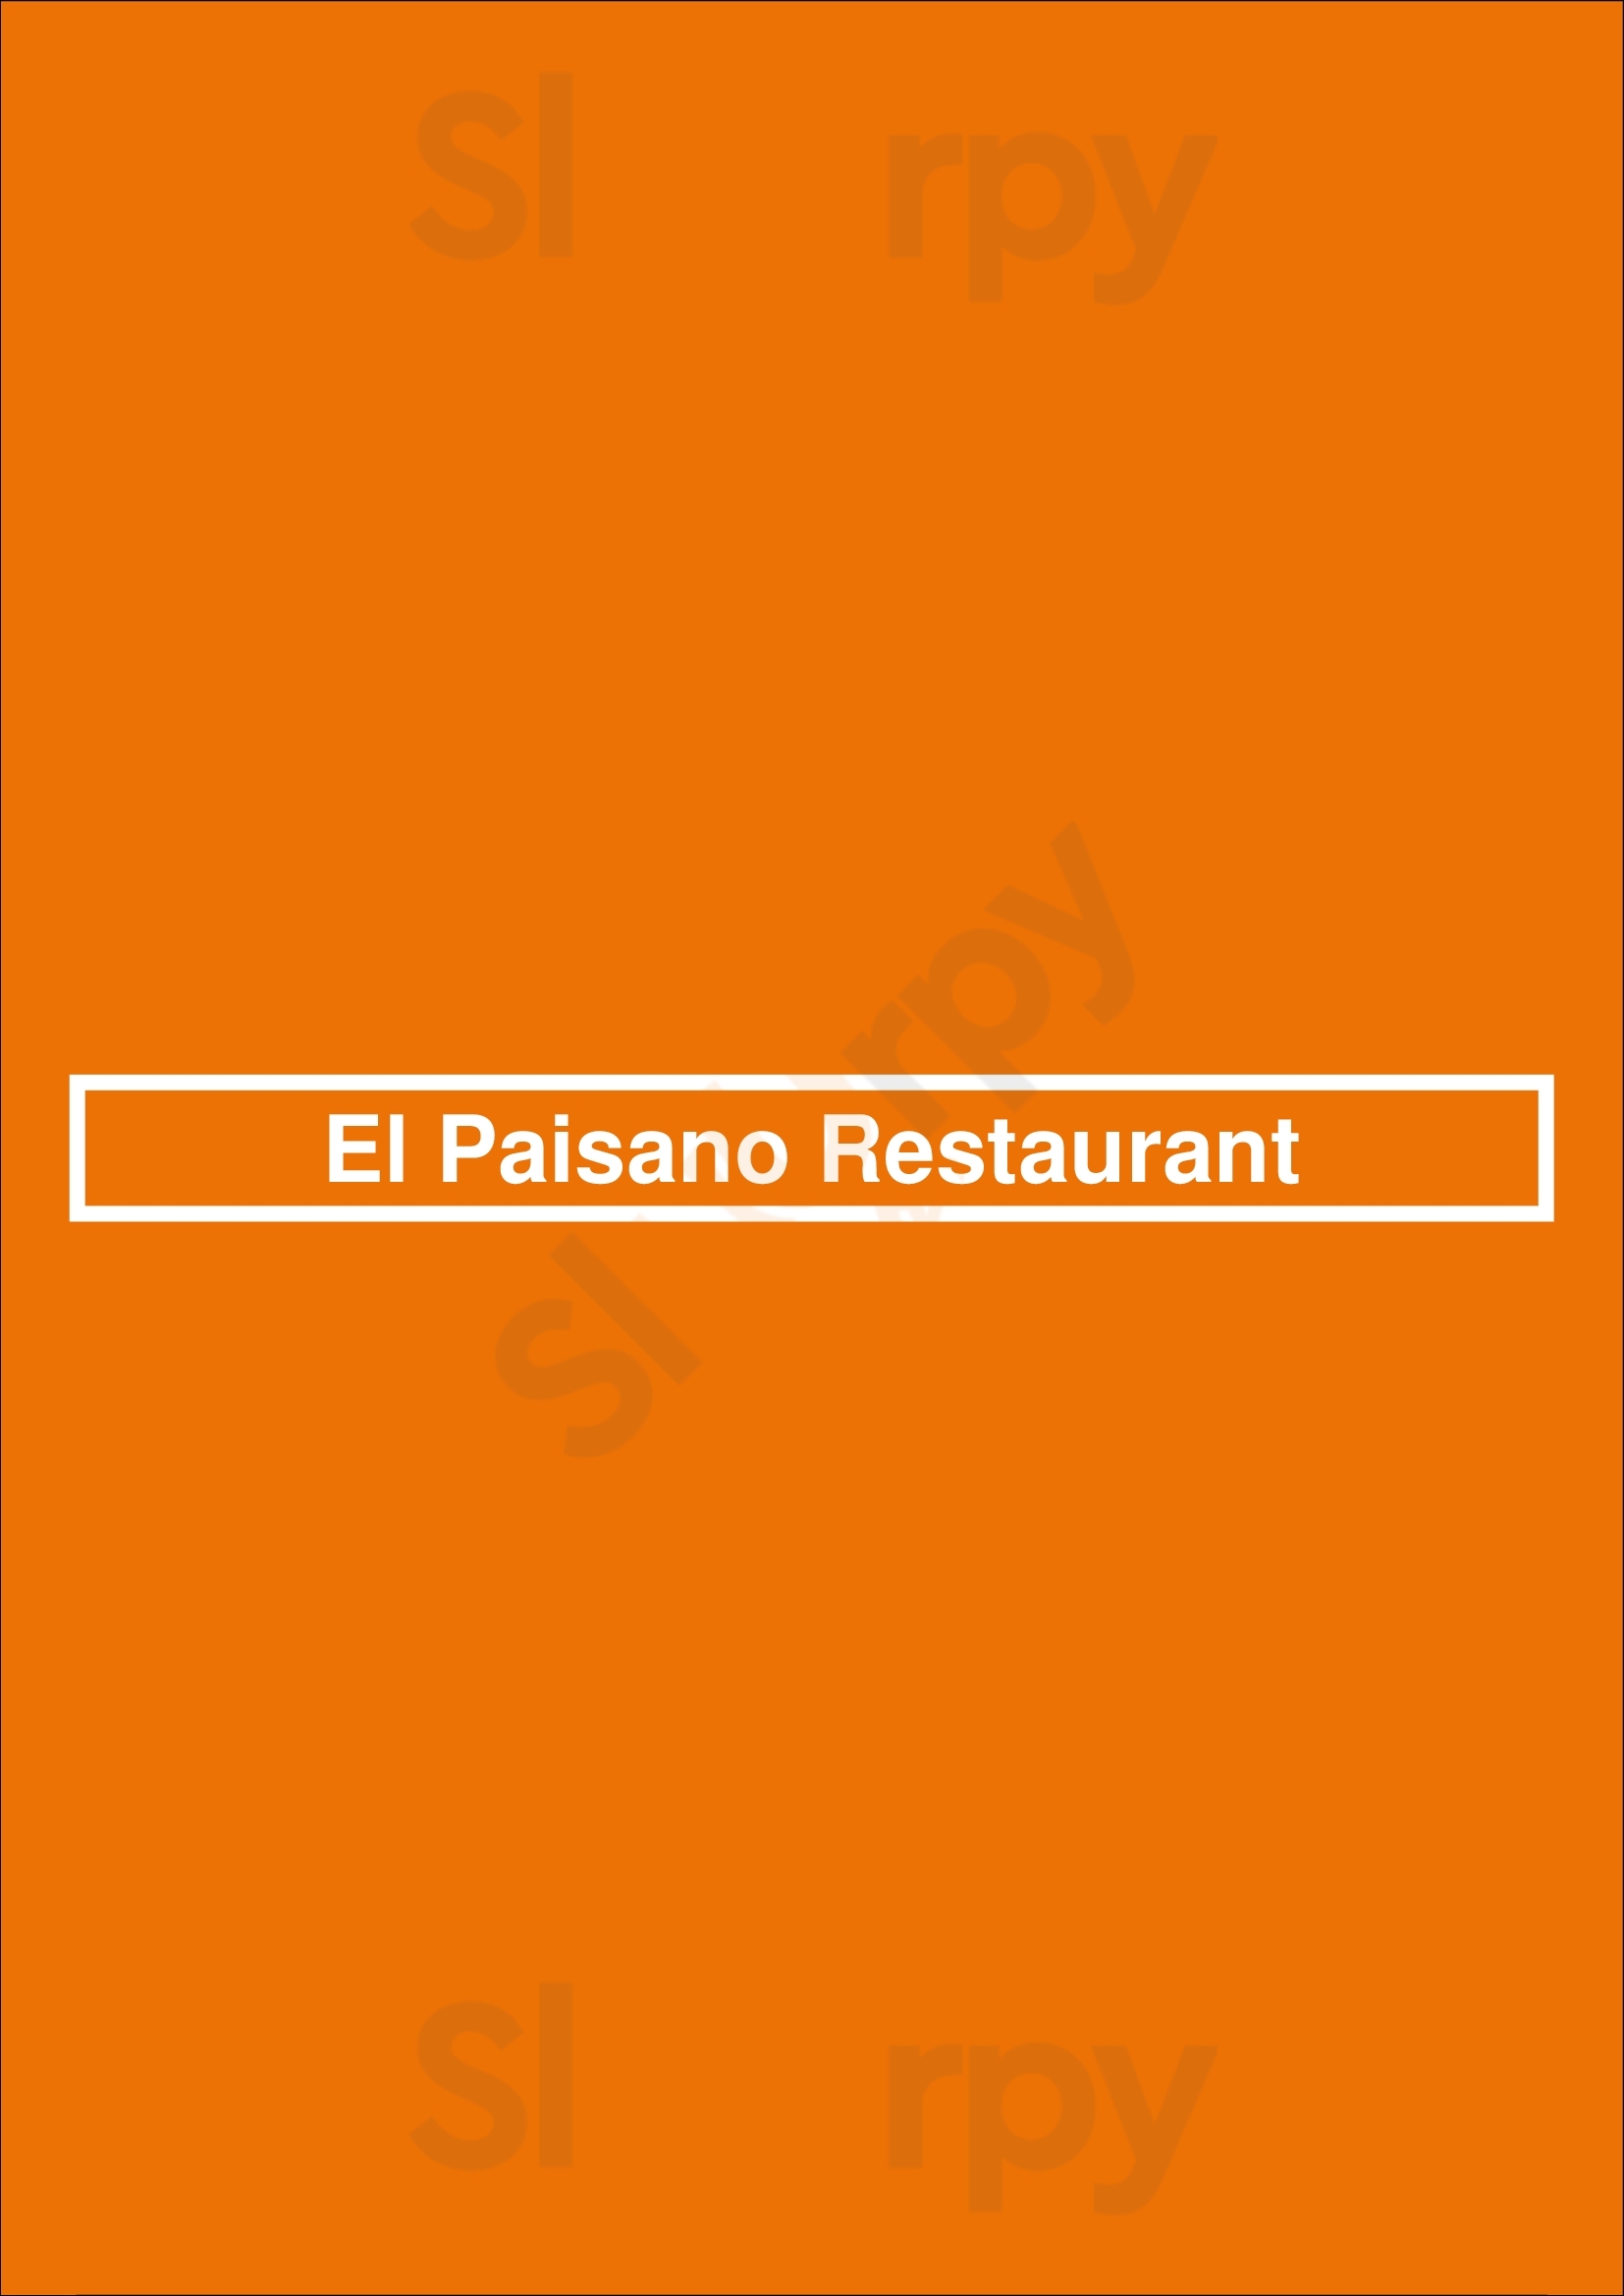 El Paisano Restaurant Reno Menu - 1